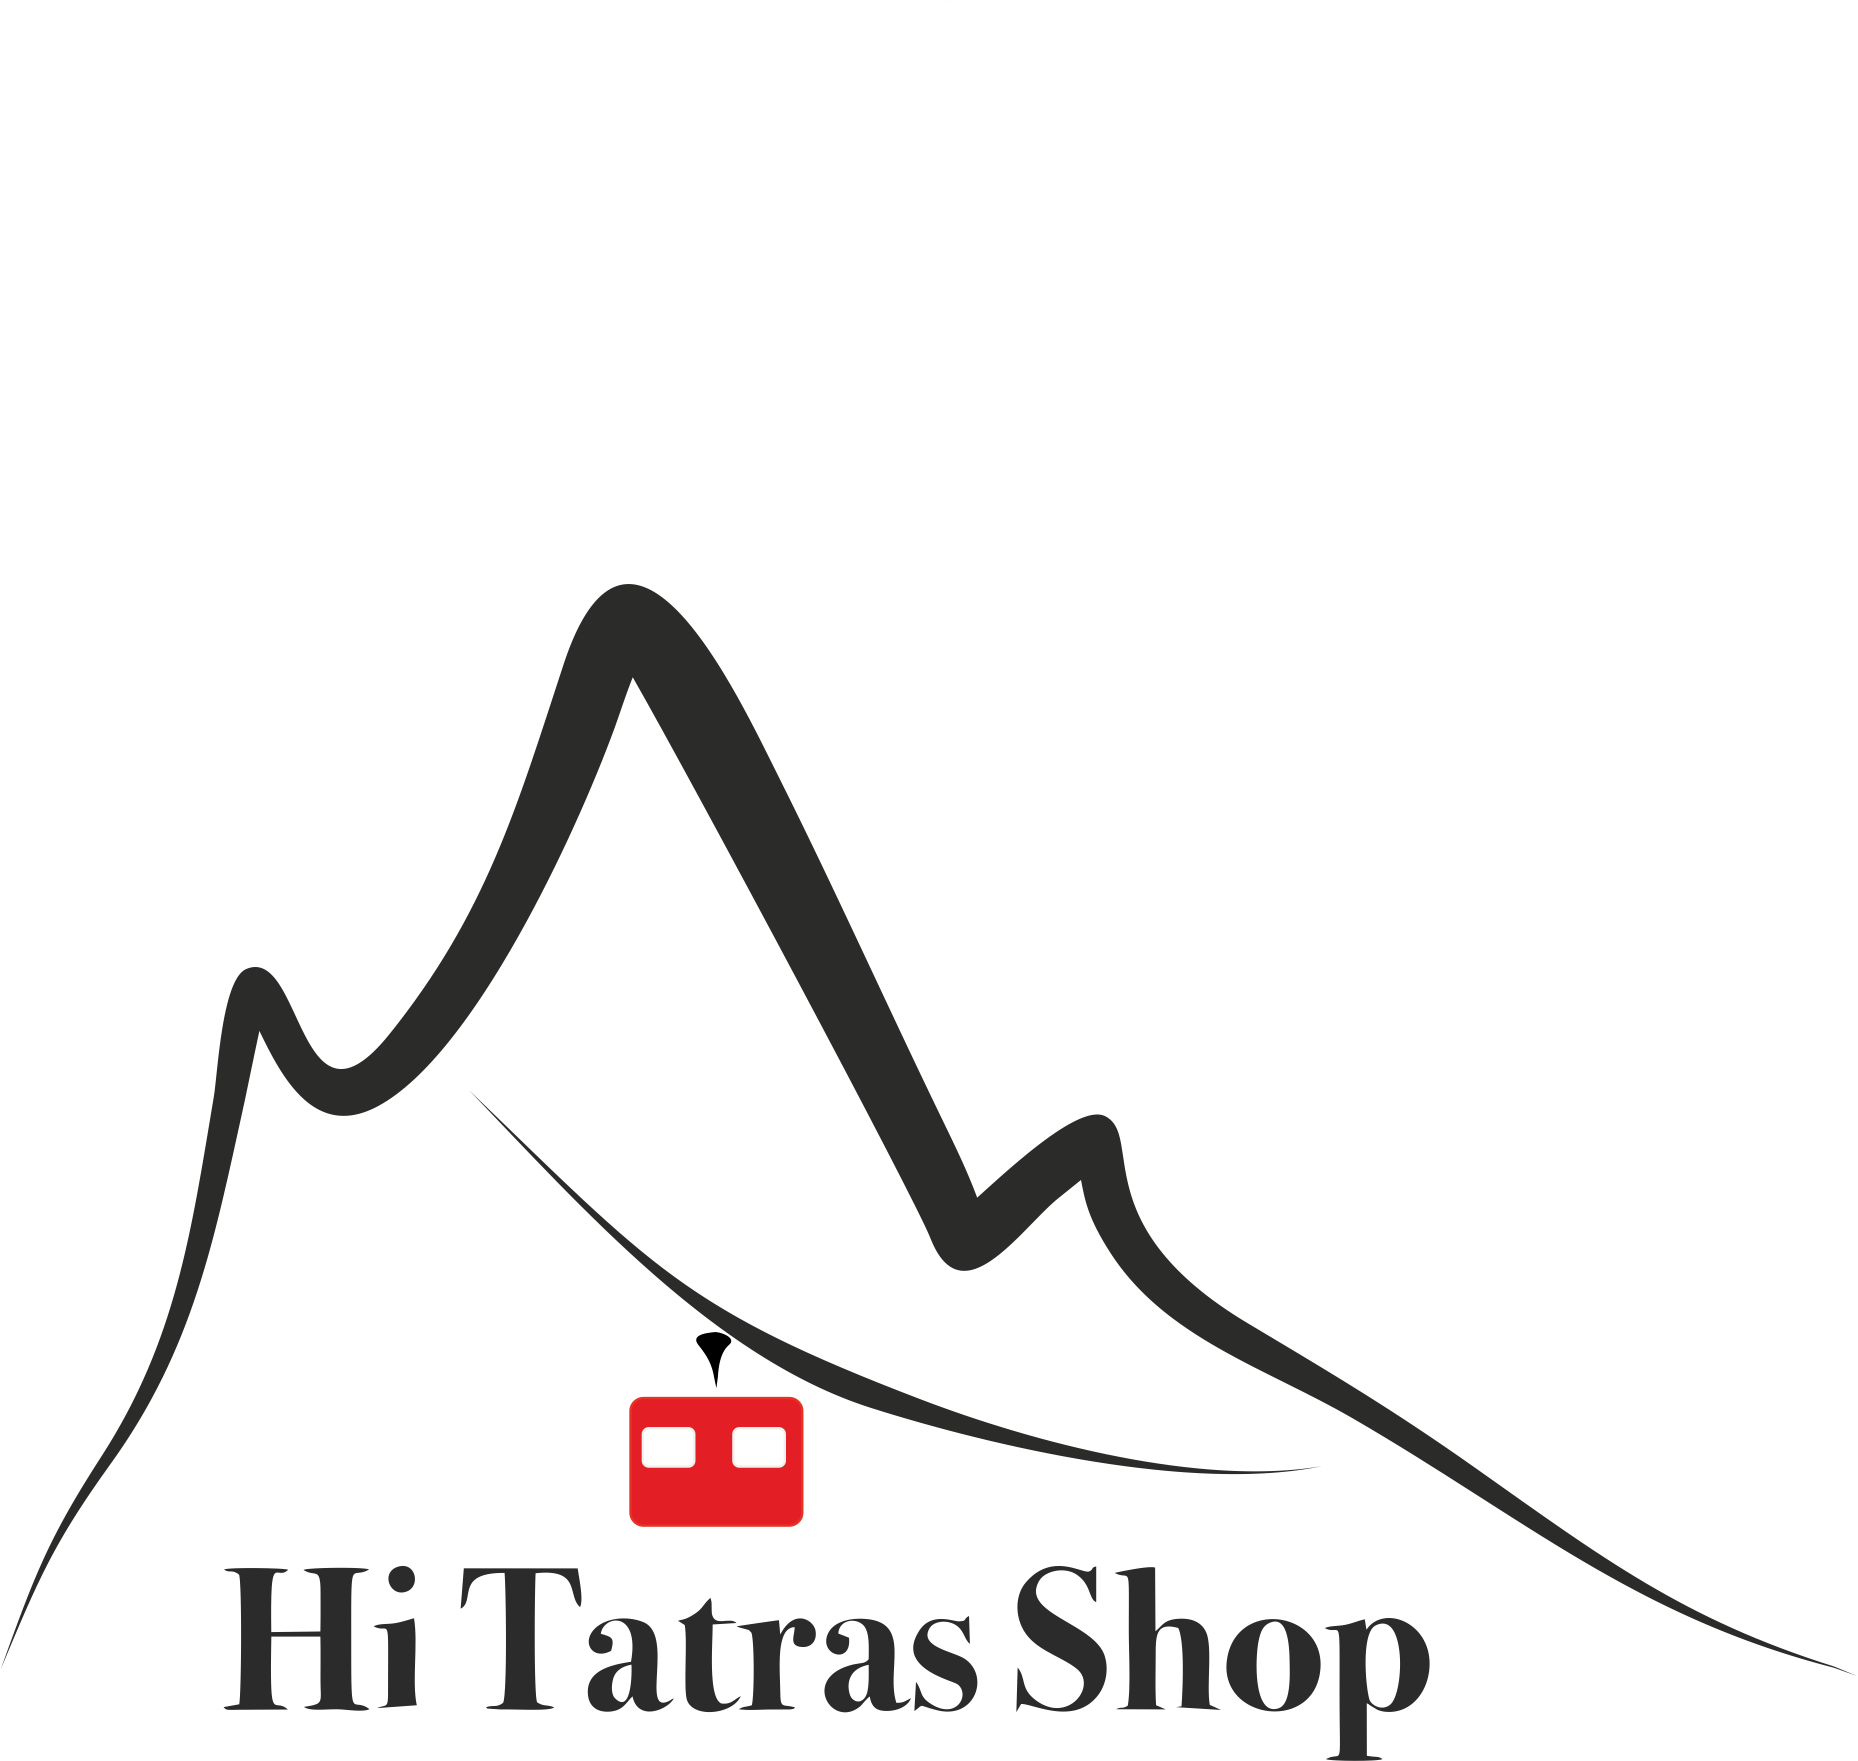 Kamenná predajňa vo Vysokých Tatrách